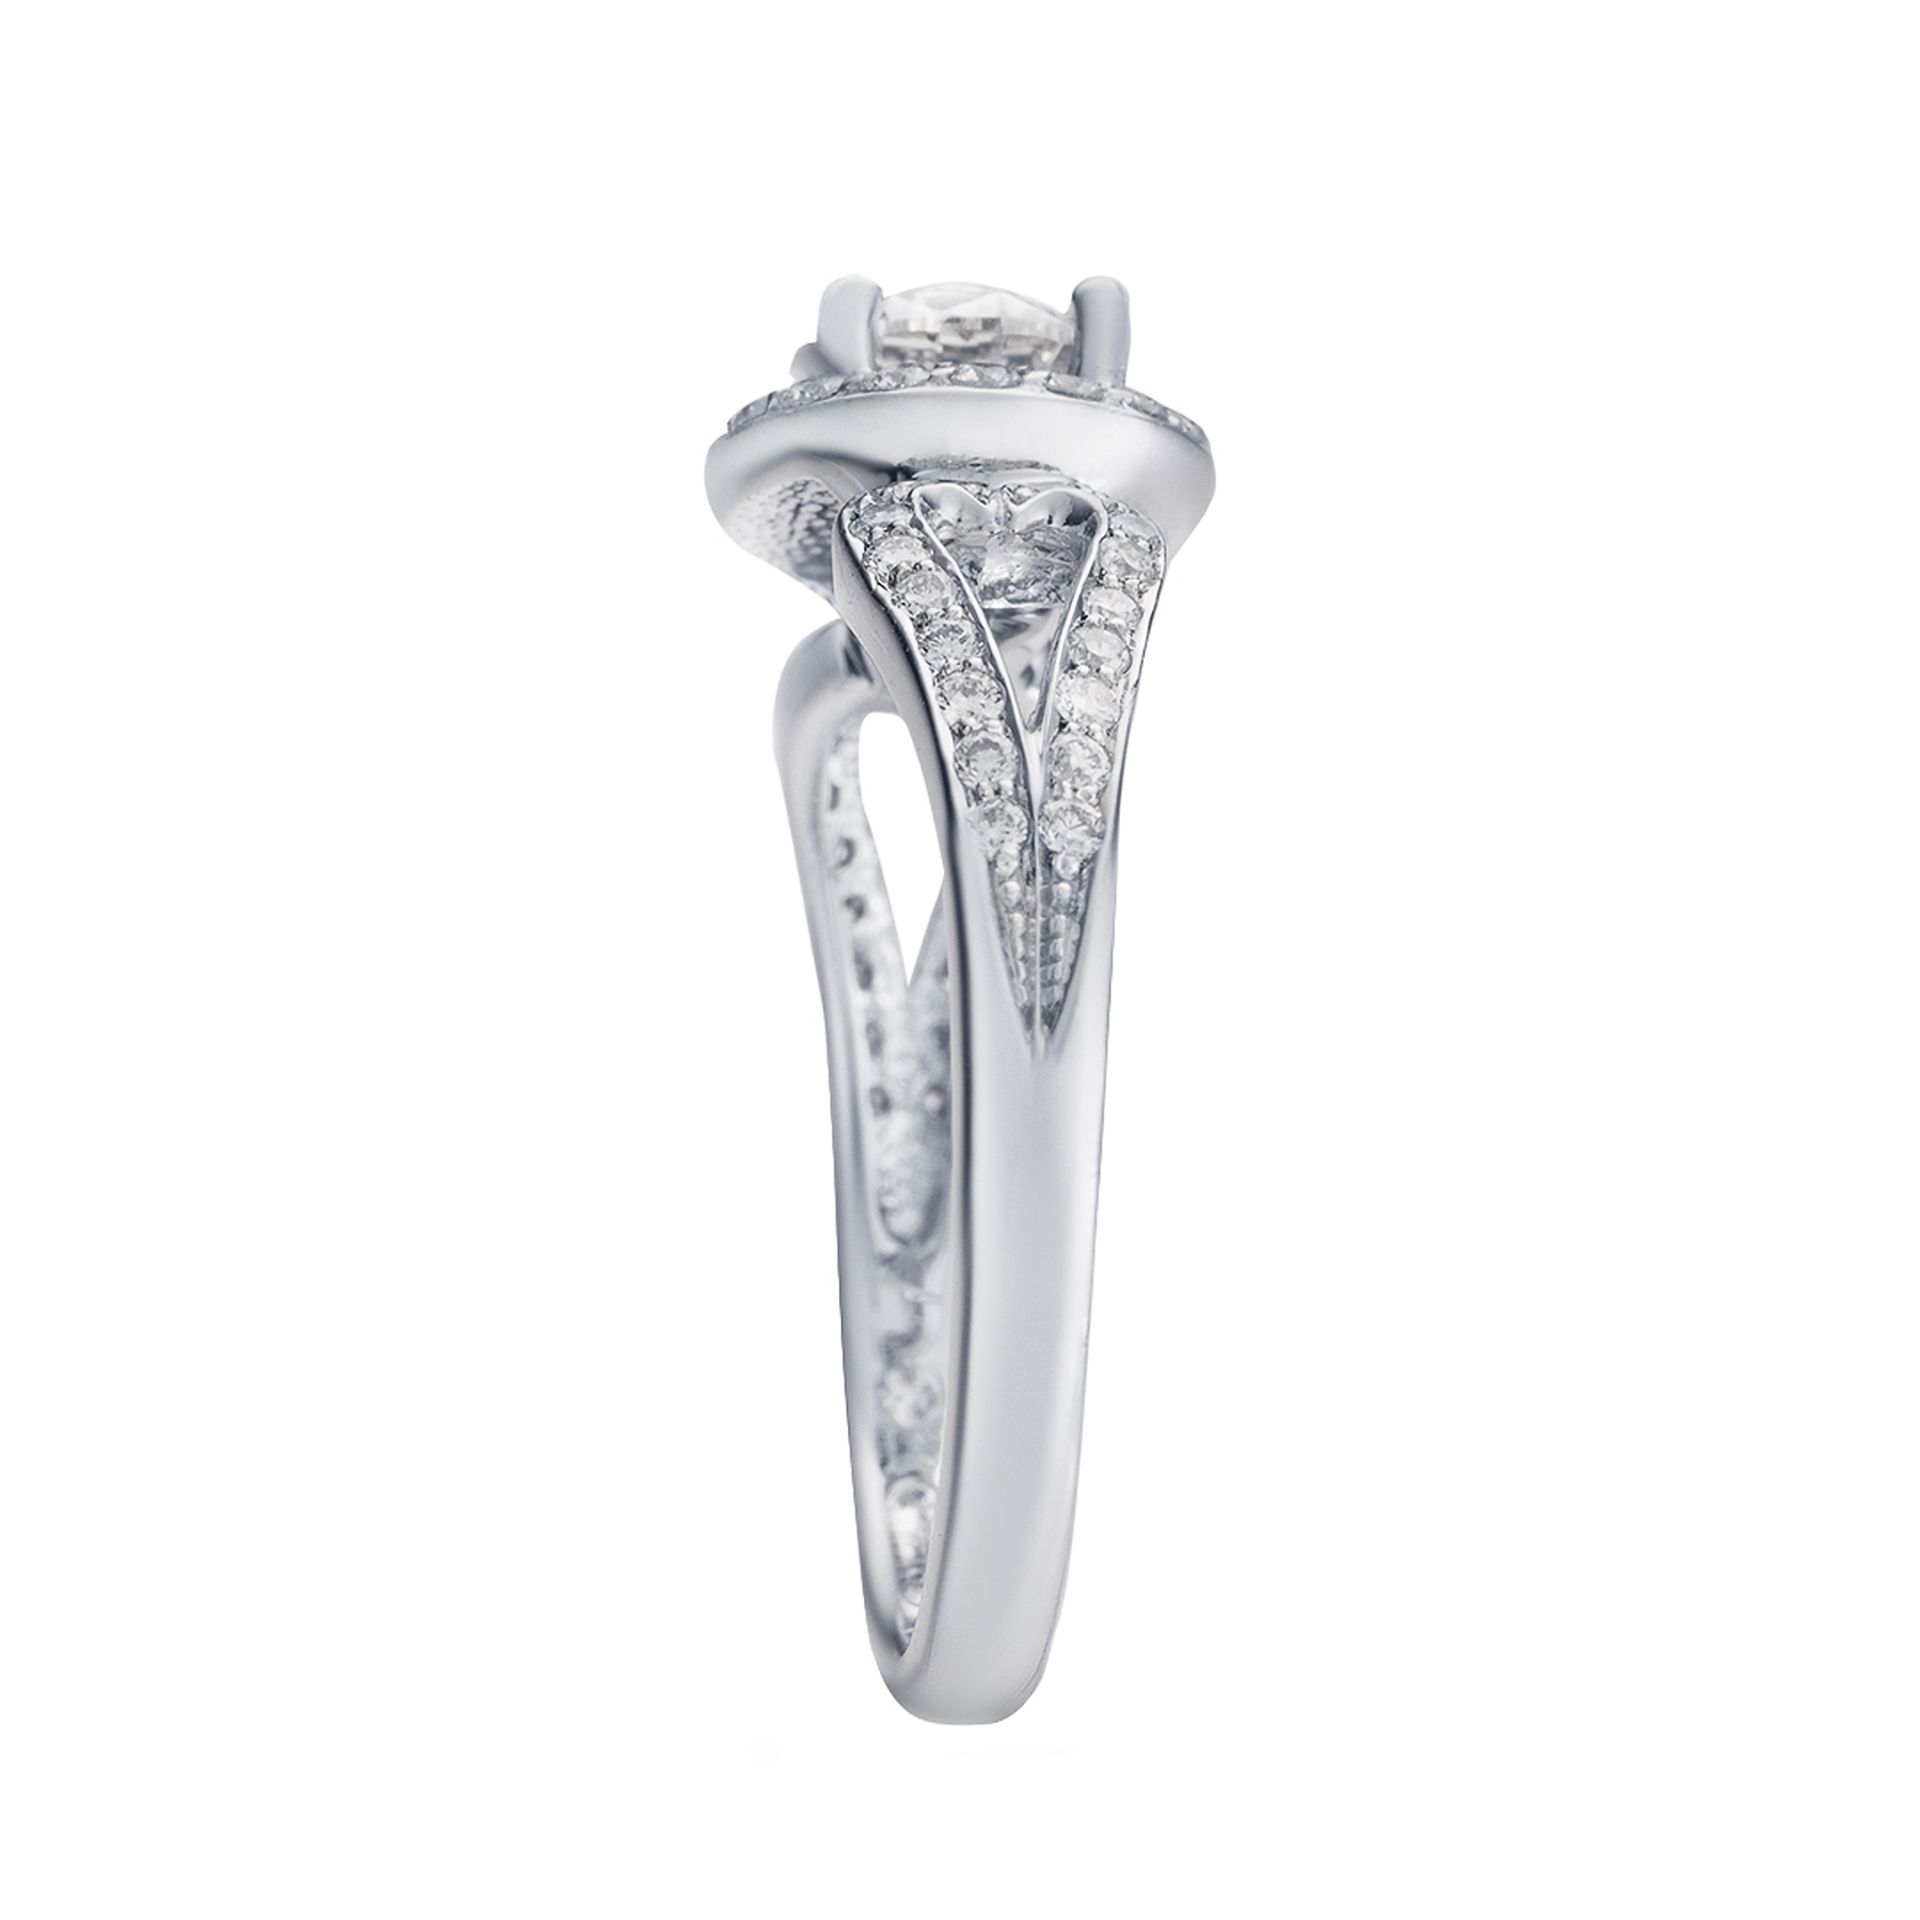 Nickelfreier Verlobungsring aus Gold und Diamanten | Nickel Free Gold and Diamond Engagement Ring - Image 2 of 3